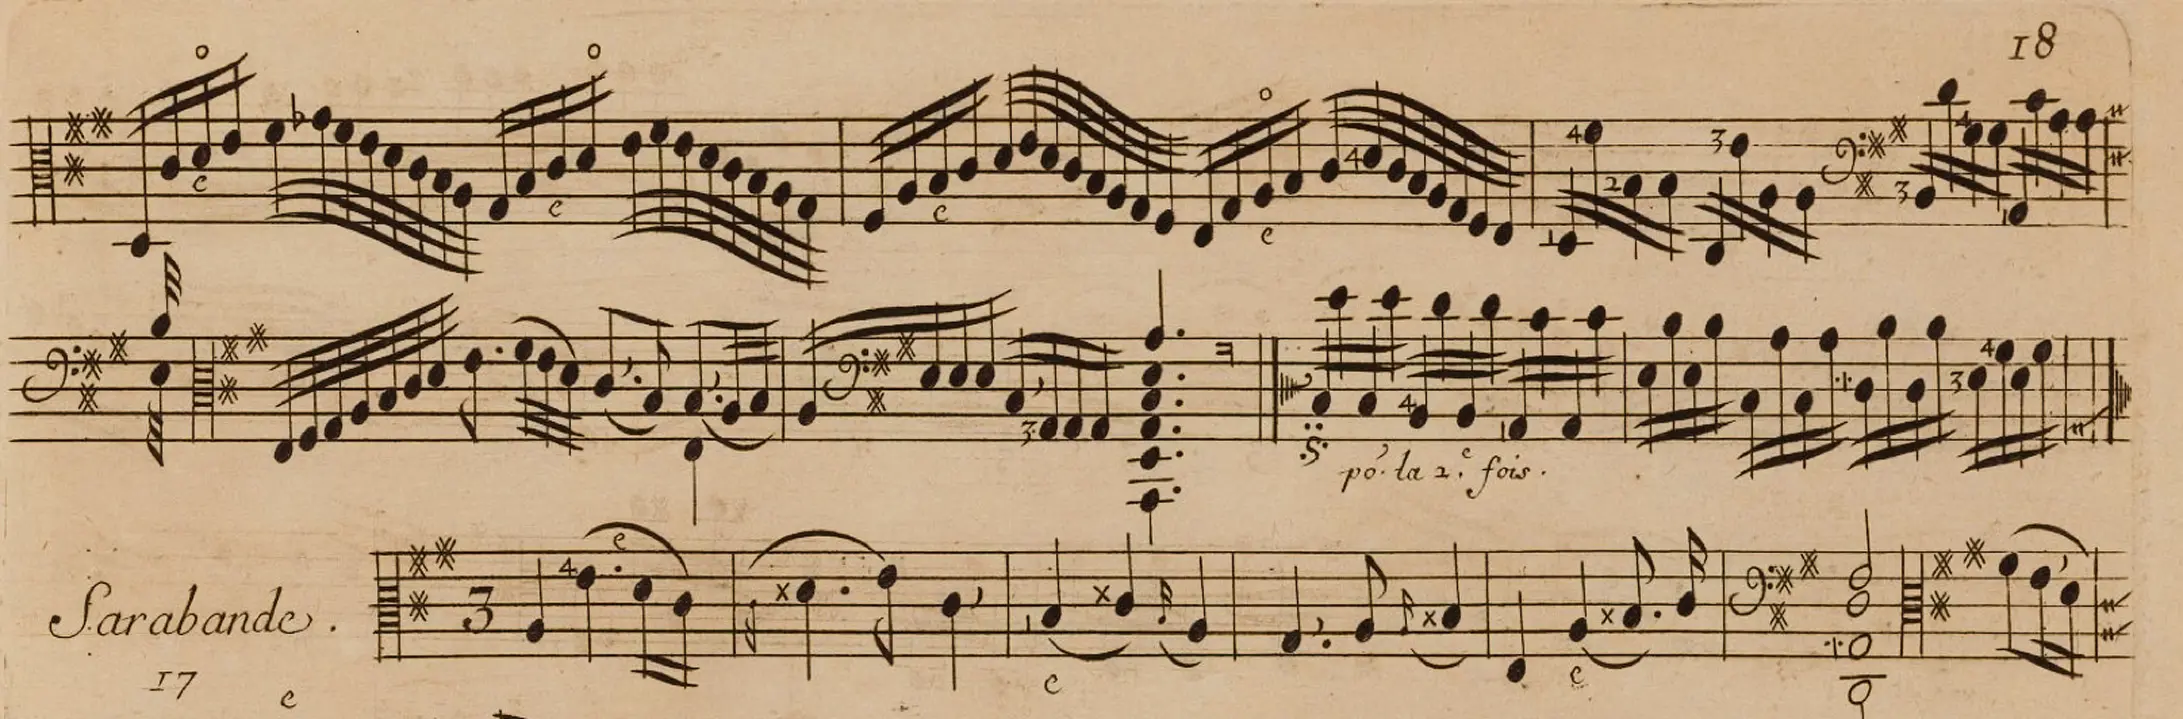 cuartetos barrocos para soprano violin flauta y bajo contuno - Qué es el bajo continuo en la música barroca